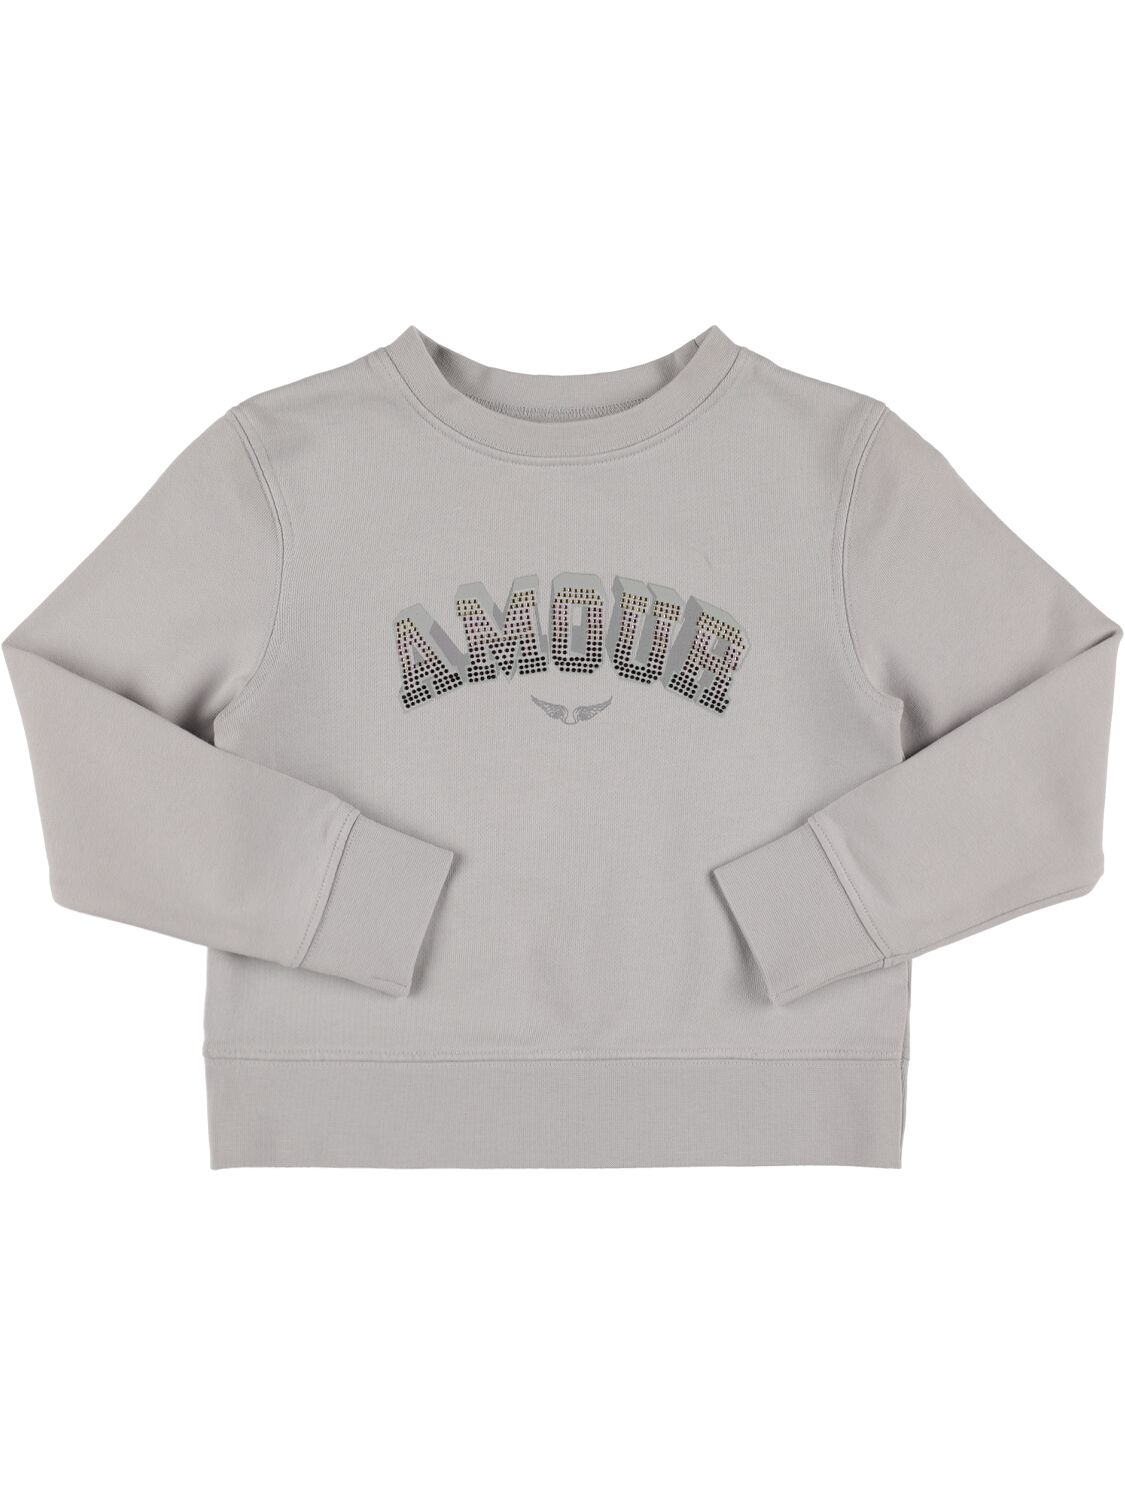 Zadig & Voltaire Kids' Embellished Cotton Sweatshirt In Light Grey